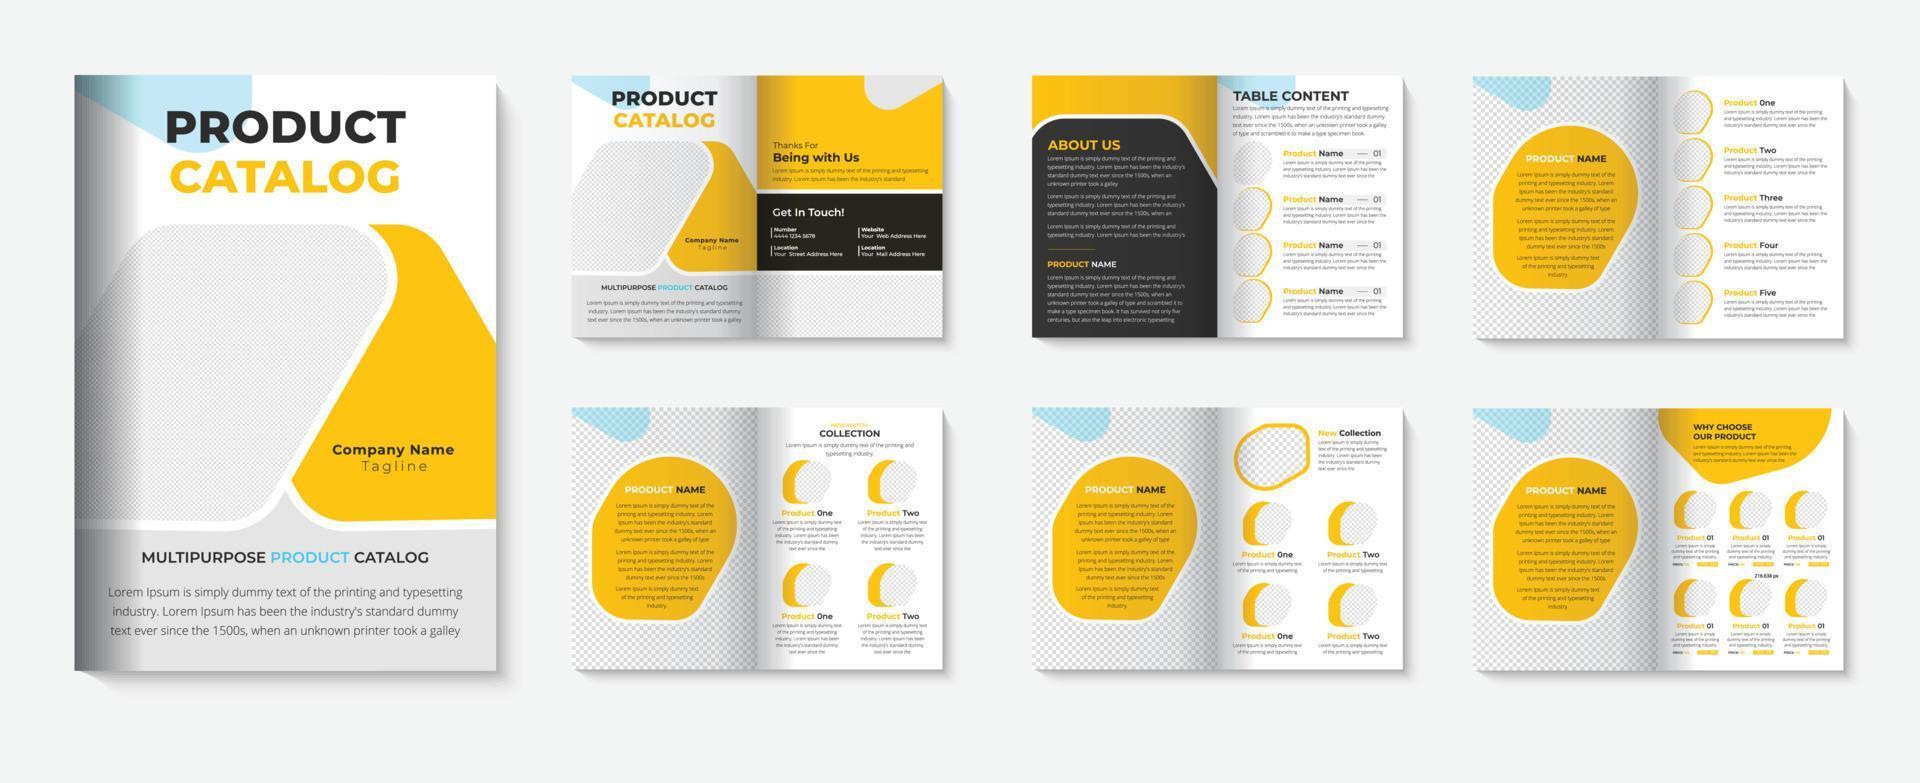 Product catalogus sjabloon met brochure boekje ontwerp voor Product catalogus pro downloaden vector